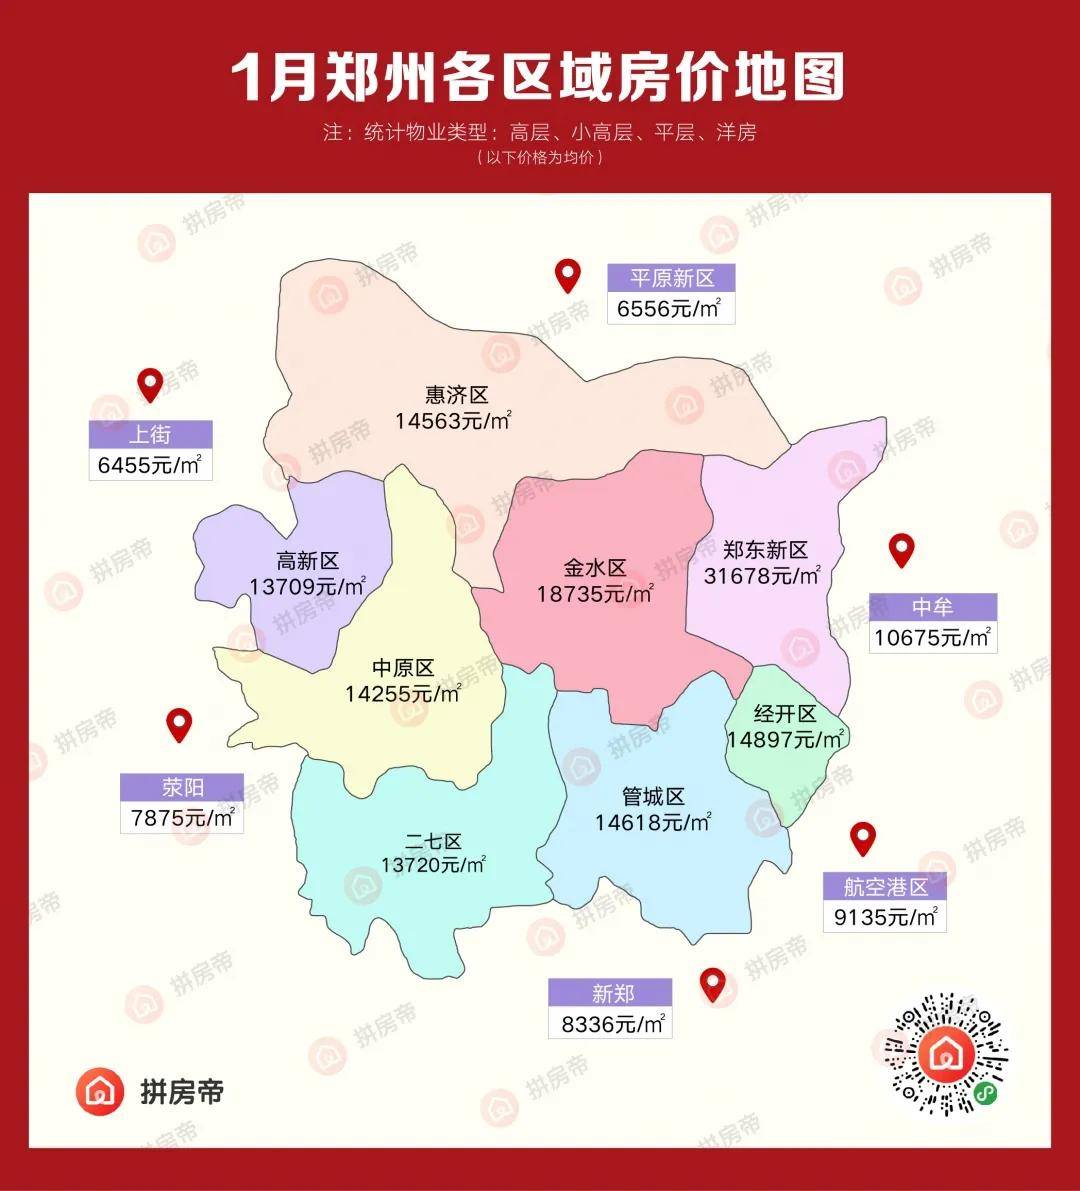 重大信号!郑州最新『房价地图』出炉,9个区房价下跌!